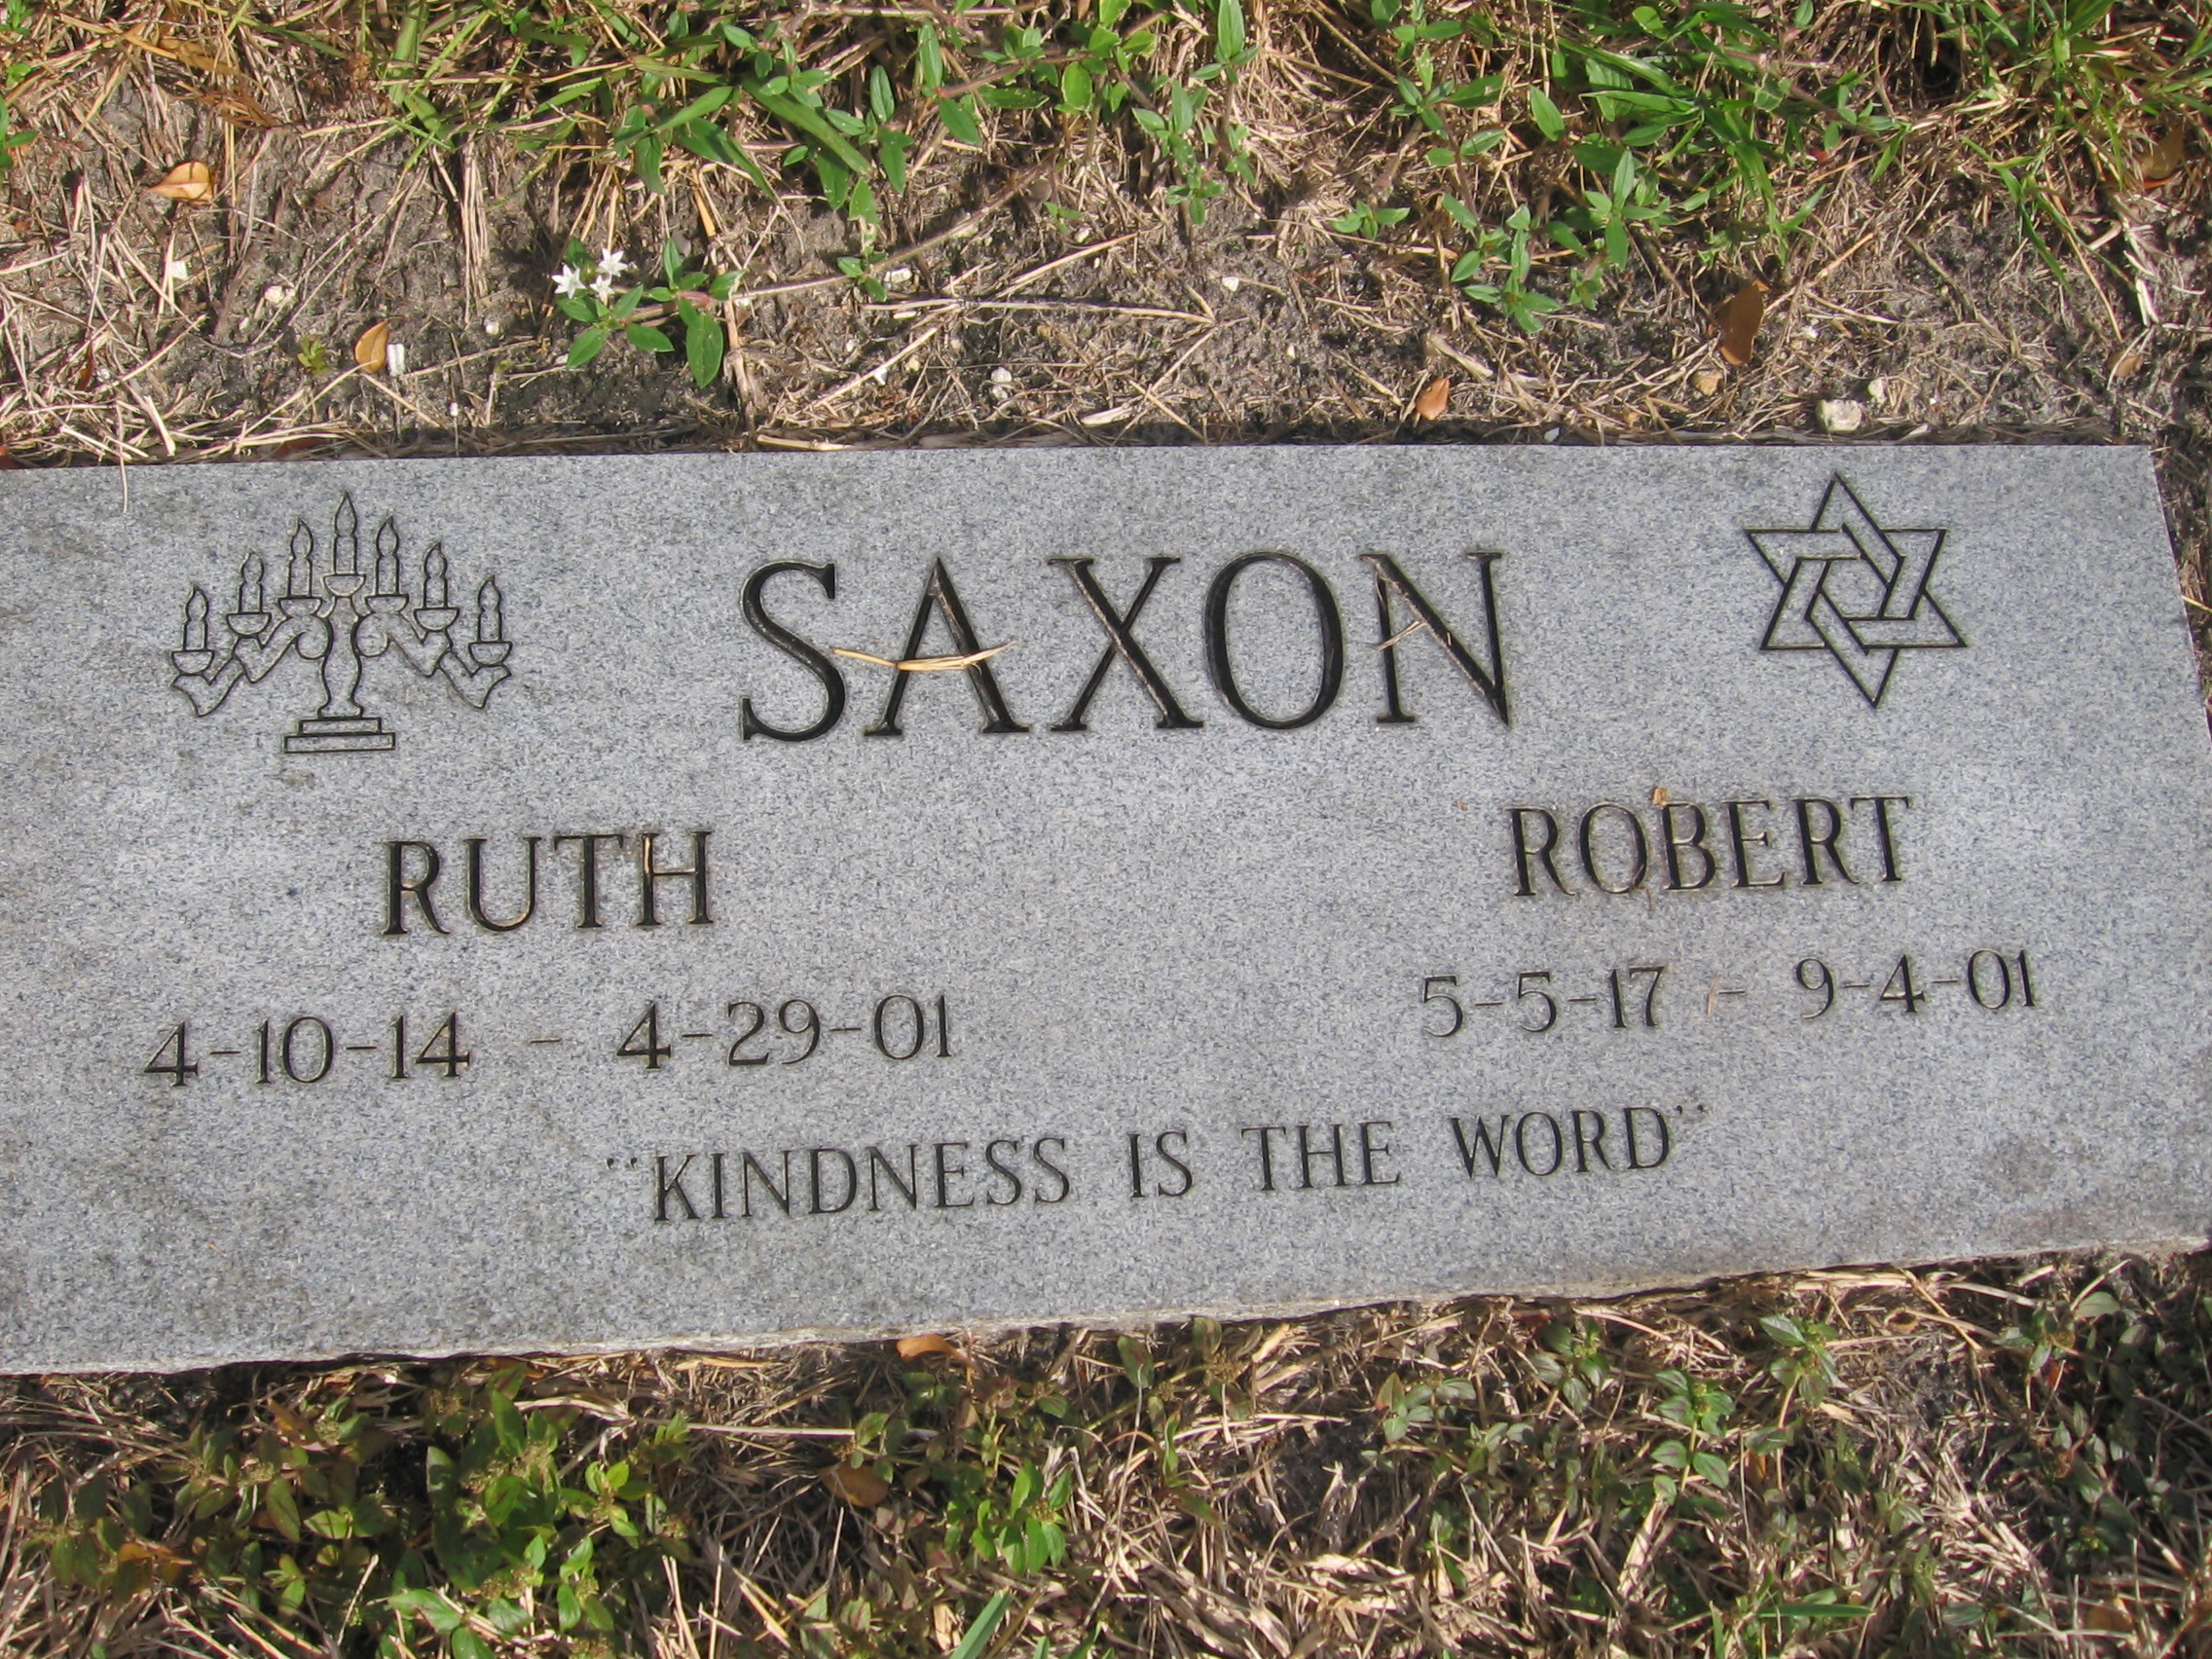 Robert Saxon